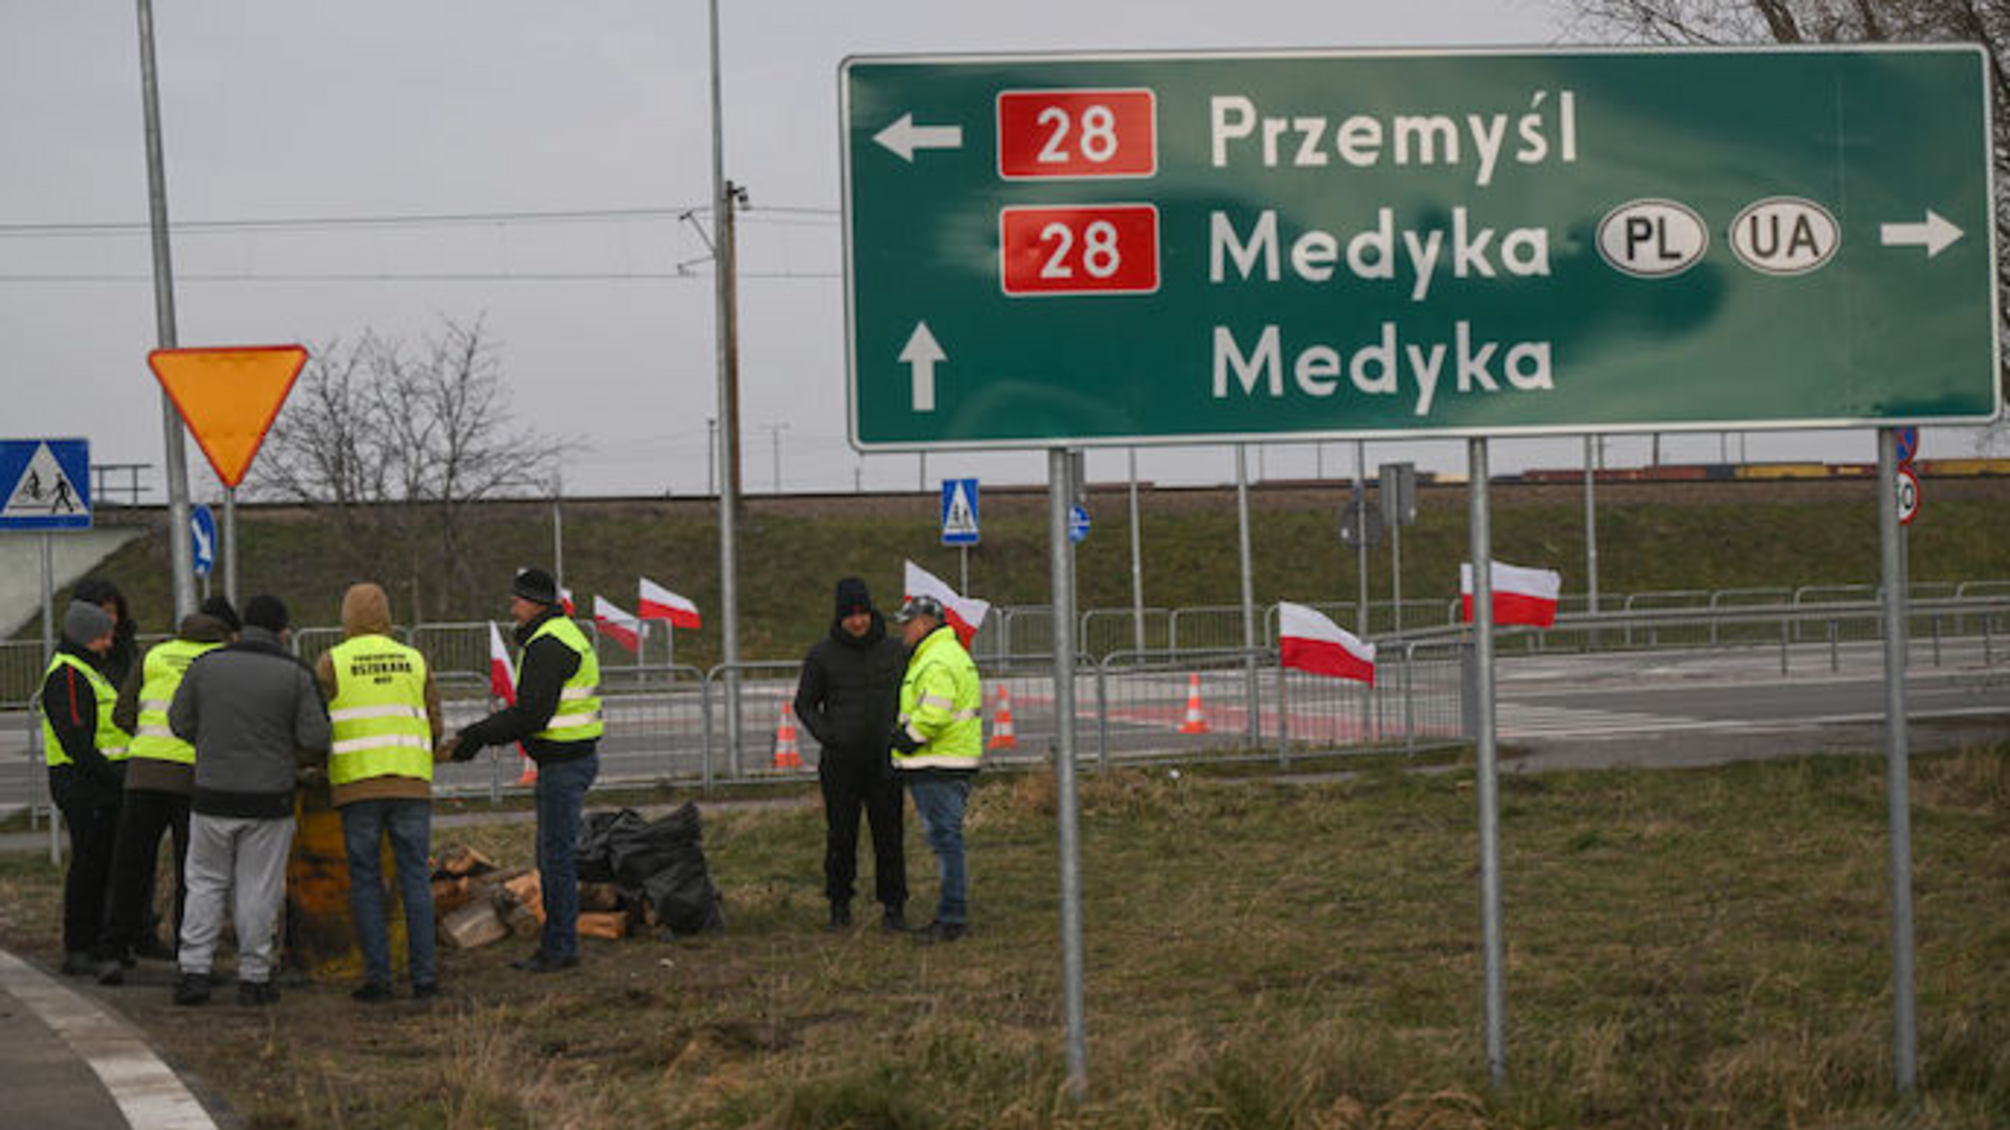 Польские фермеры приостановили блокаду 'Шегини-Медика': новое правительство Польши ведет переговоры